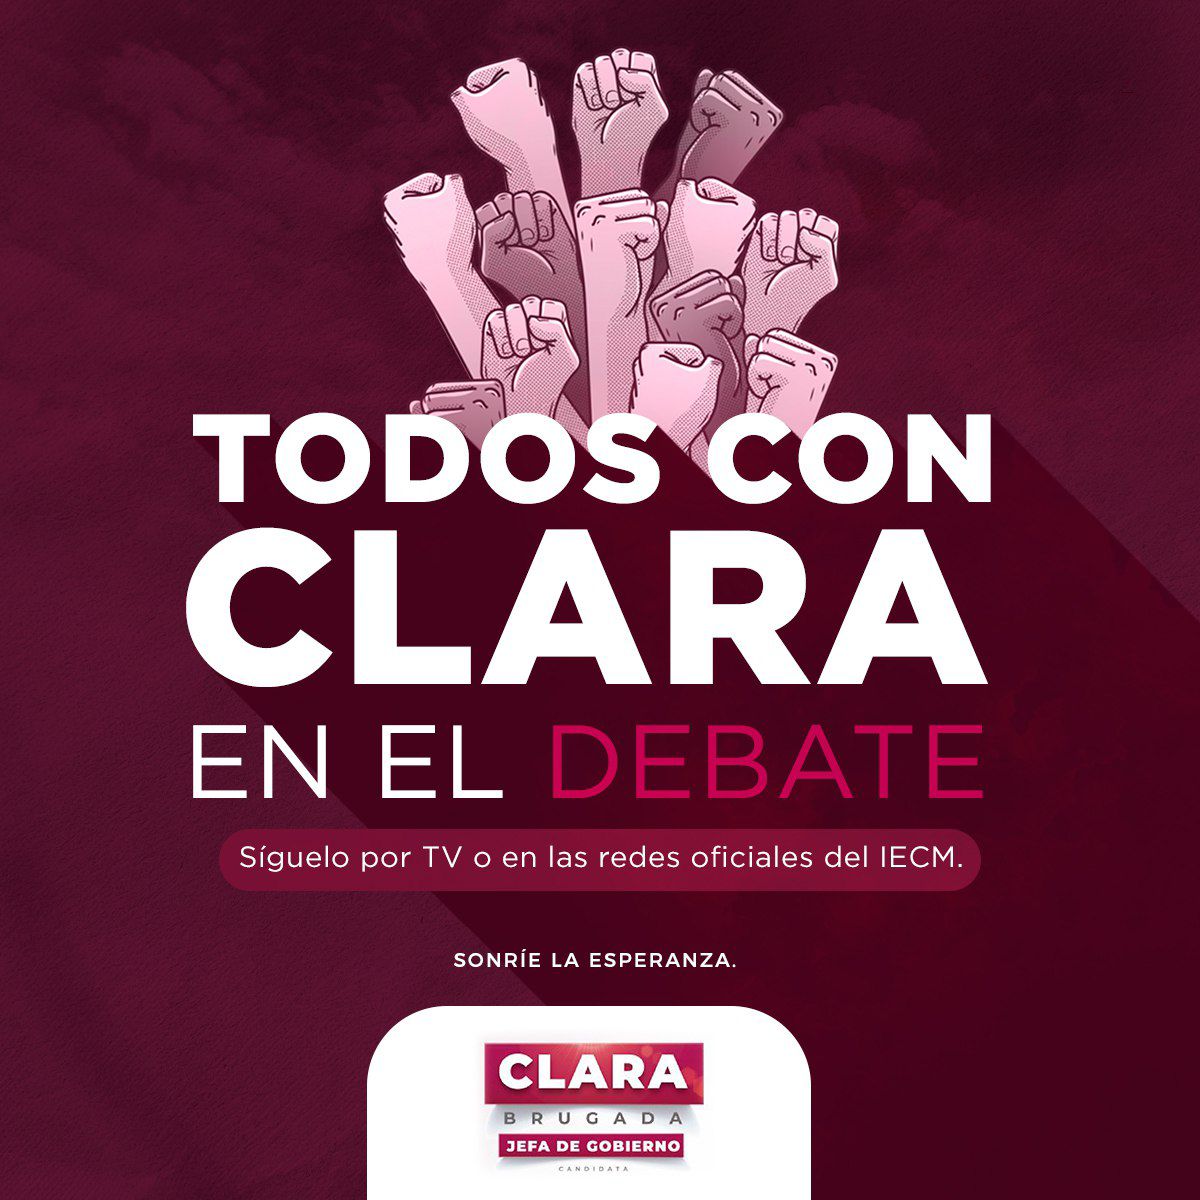 Si yo con @ClaraBrugadaM quien contra todos por eso #JefaDeGobierno #Todosganamos